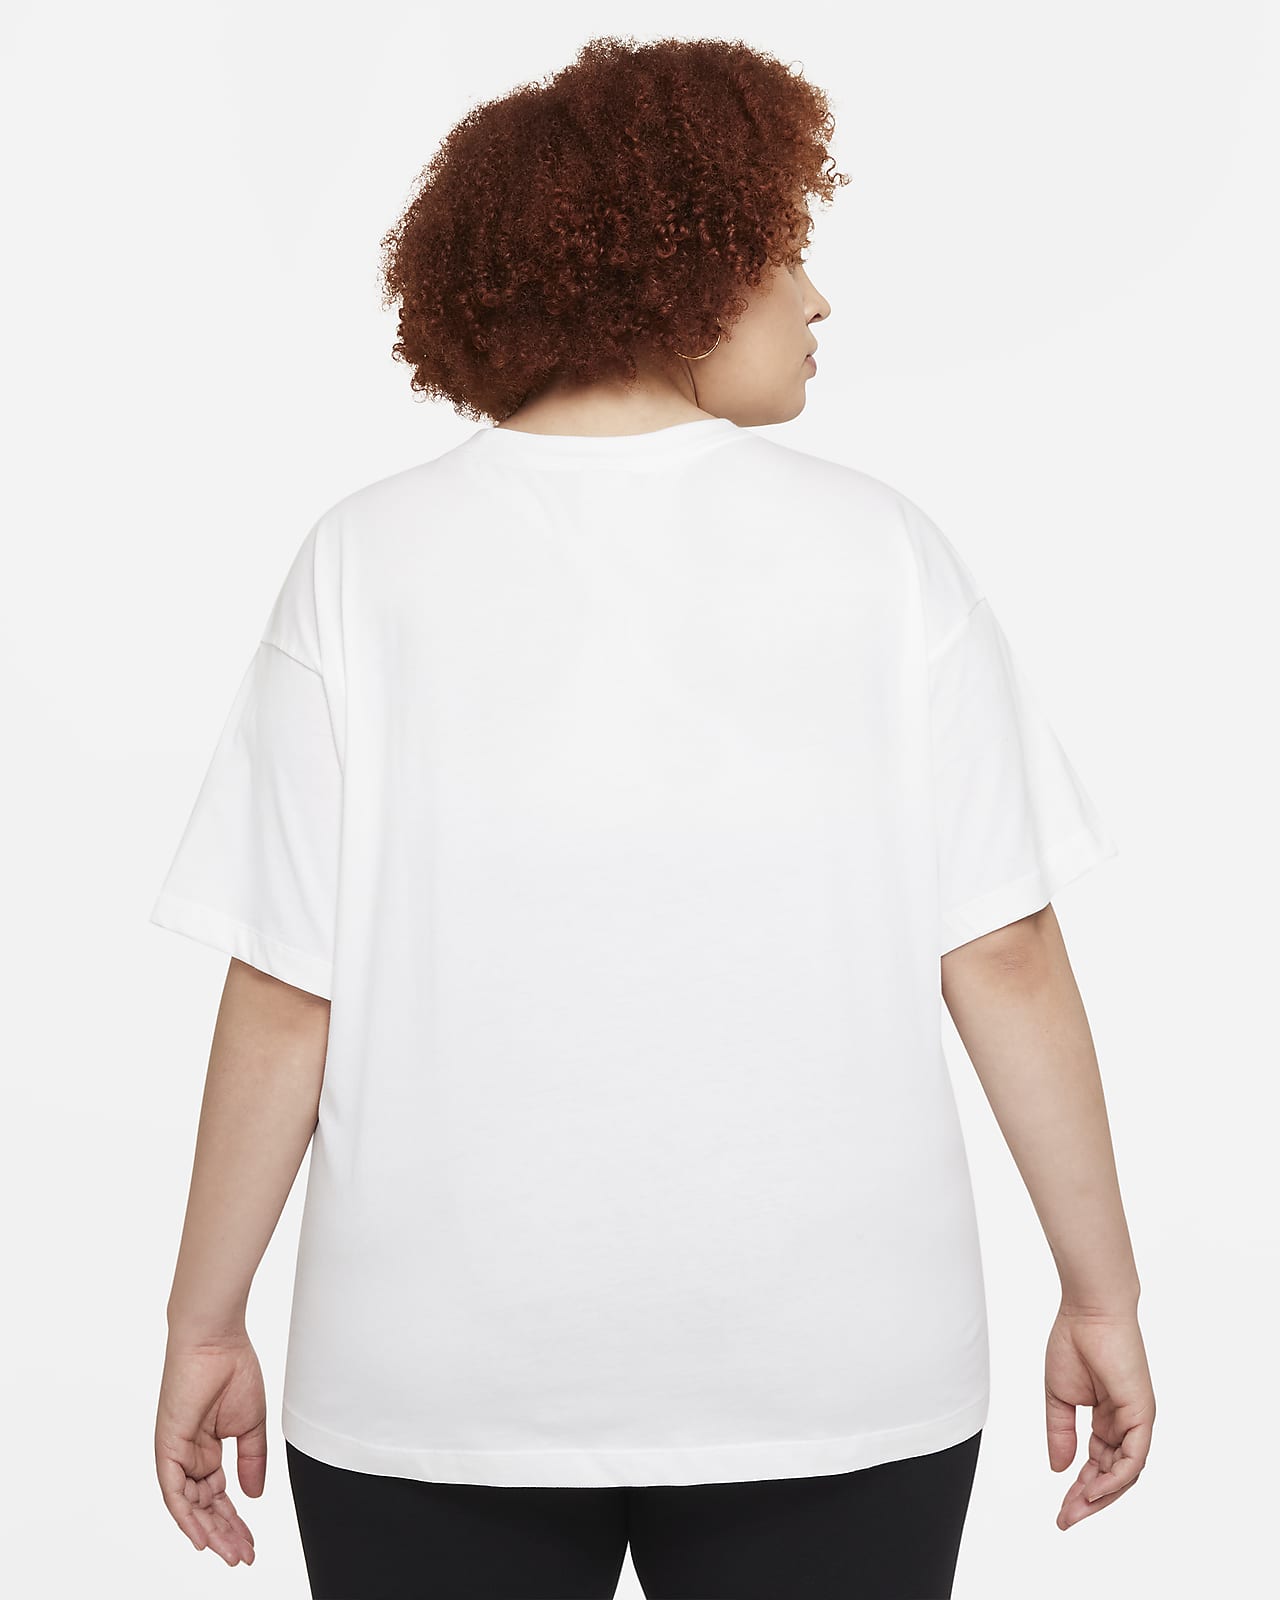 Lift Weights Women's T-Shirt Short-Sleeve Natural Curly Hair Curls